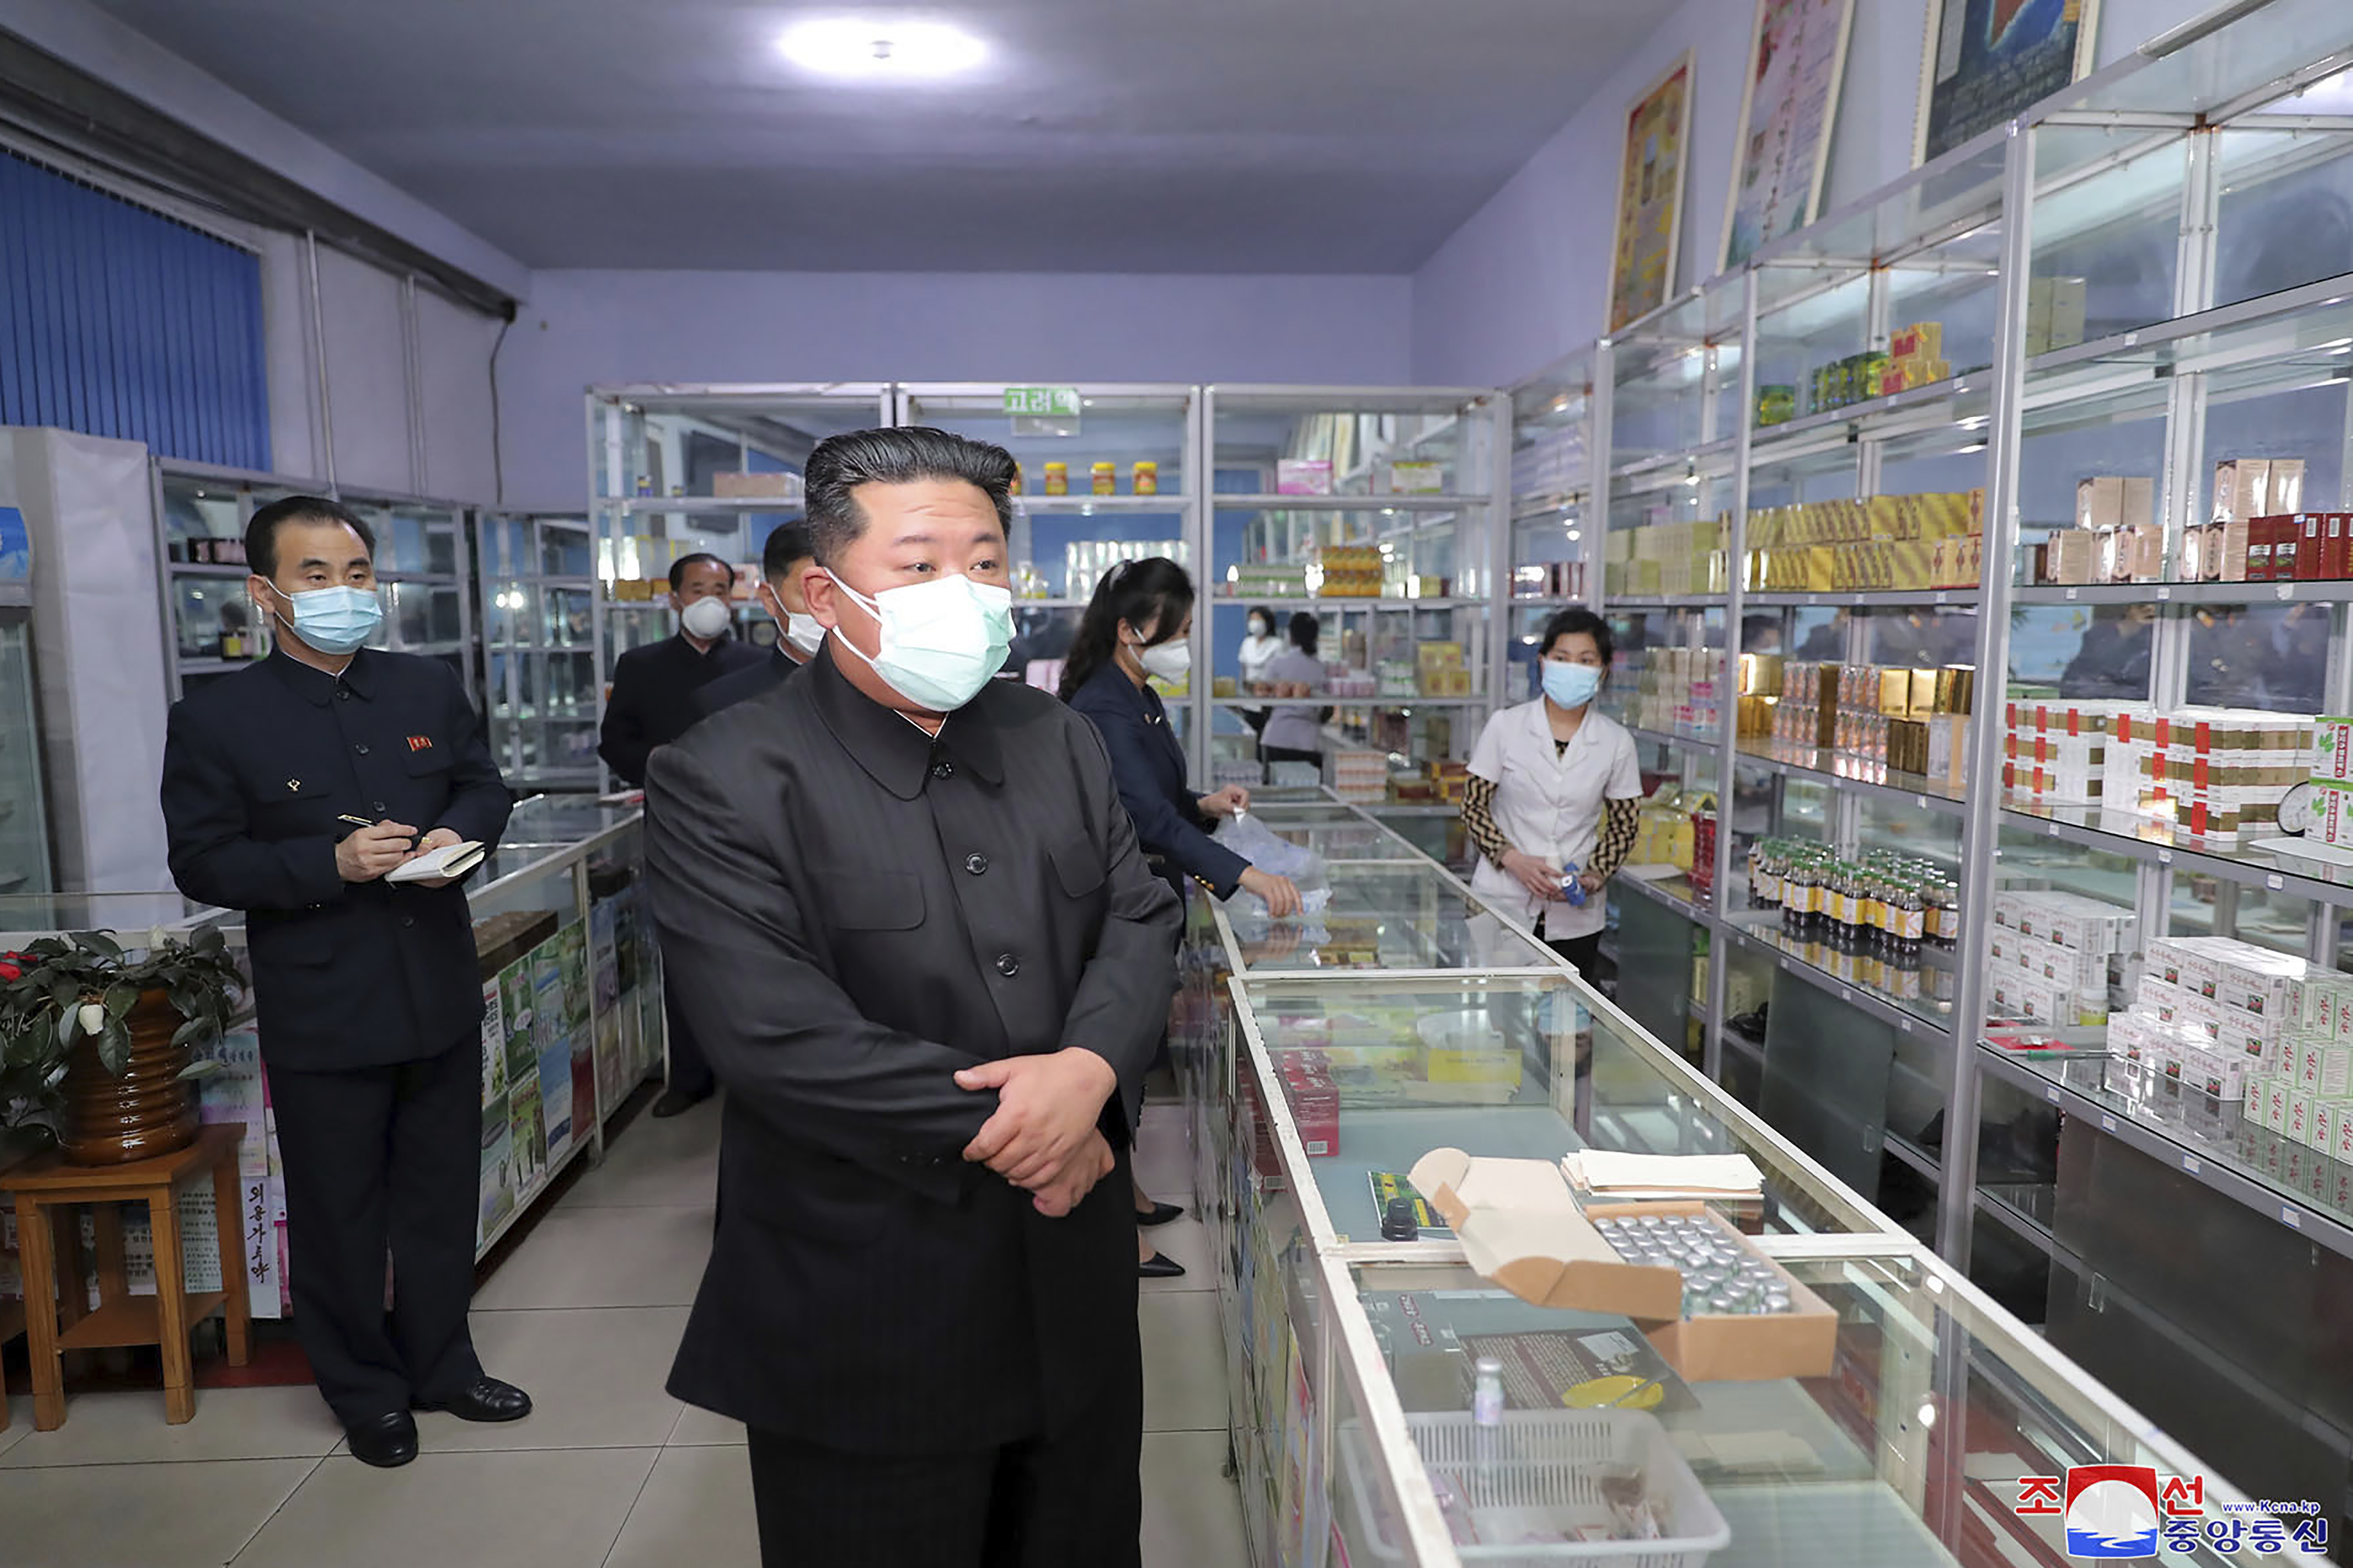 El dictador Kim Jong Un visita una farmacia en Pyongyang, Corea del Norte. Los periodistas independientes no tuvieron acceso para cubrir el evento representado en esta imagen distribuida por el gobierno de Corea del Norte (Agencia Central de Noticias de Corea/Servicio de Noticias de Corea vía AP)
